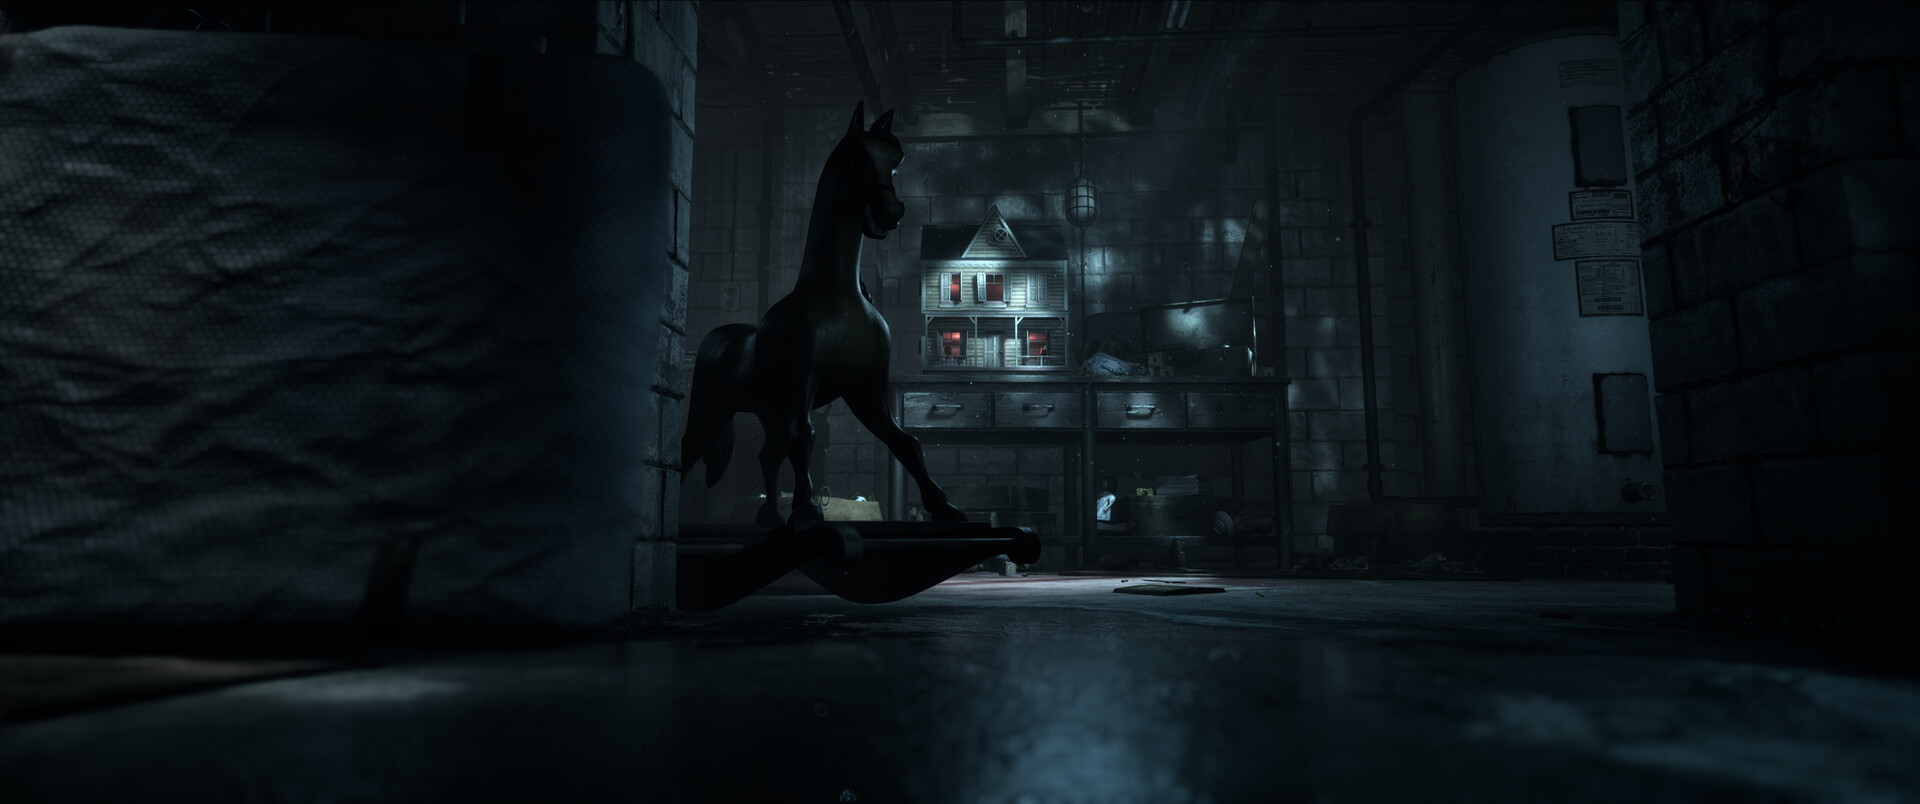 Скриншот из игры Until Dawn Remake под номером 2